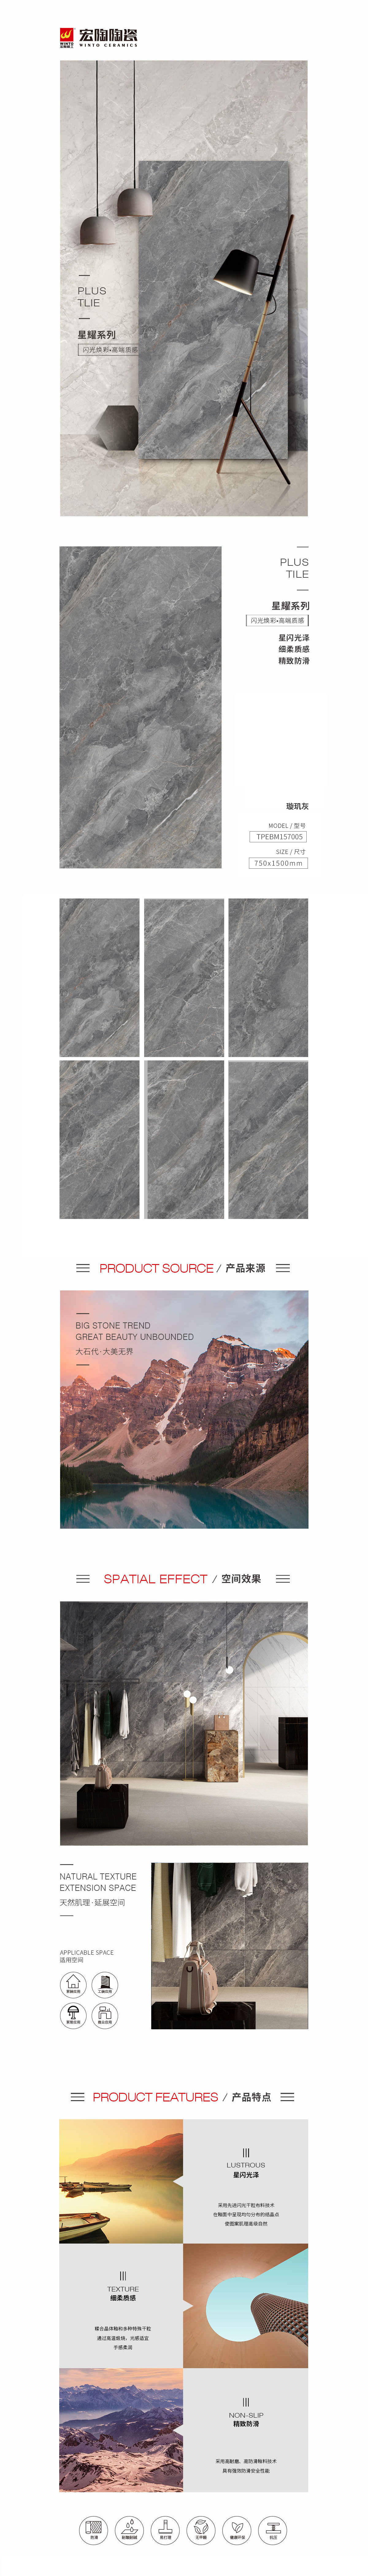 TPEBM157005璇玑灰陶瓷大板详细先容了陶瓷大板的图片、规格、特点等，是佛山瓷砖，是尊龙凯时陶瓷品牌-中国陶瓷一线品牌。